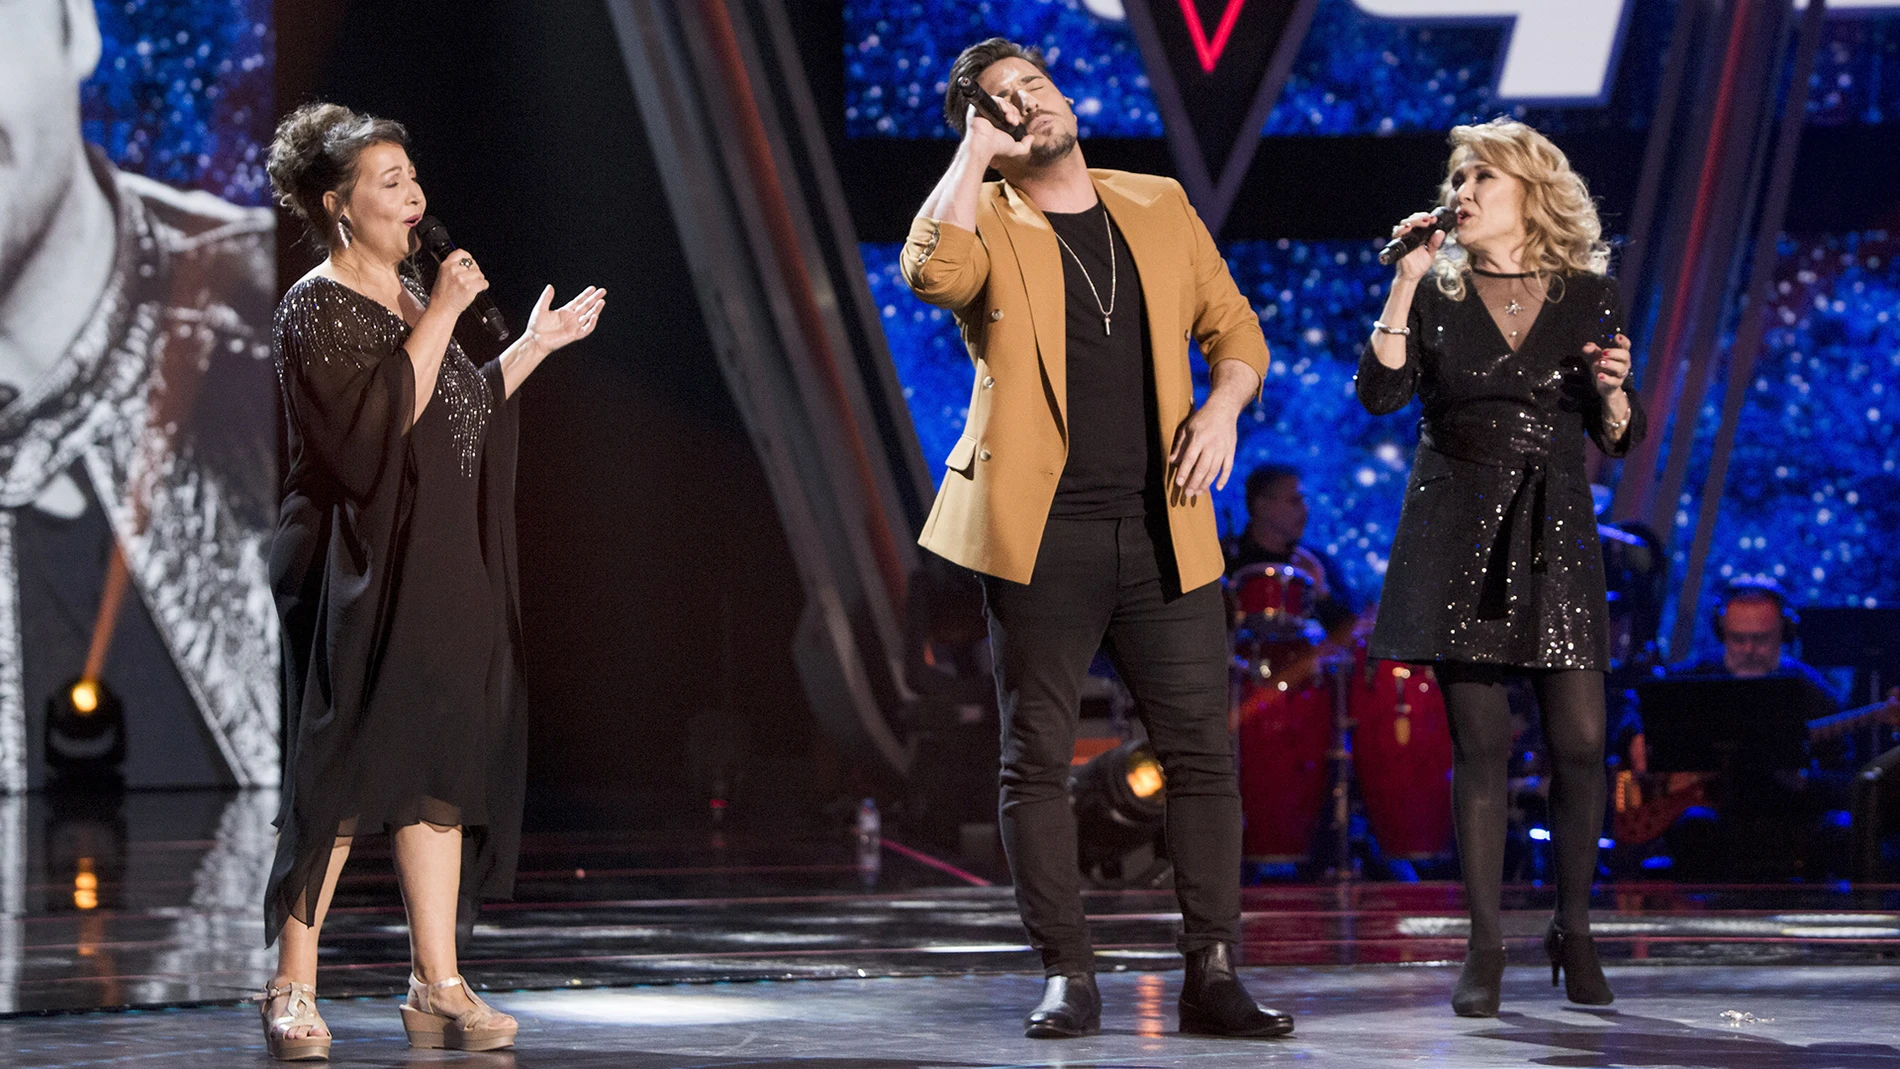 Semifinal: David Bustamante canta ‘Desde que te vi’ con Enriqueta Caballero y Helena Bianco en ‘La Voz Senior’